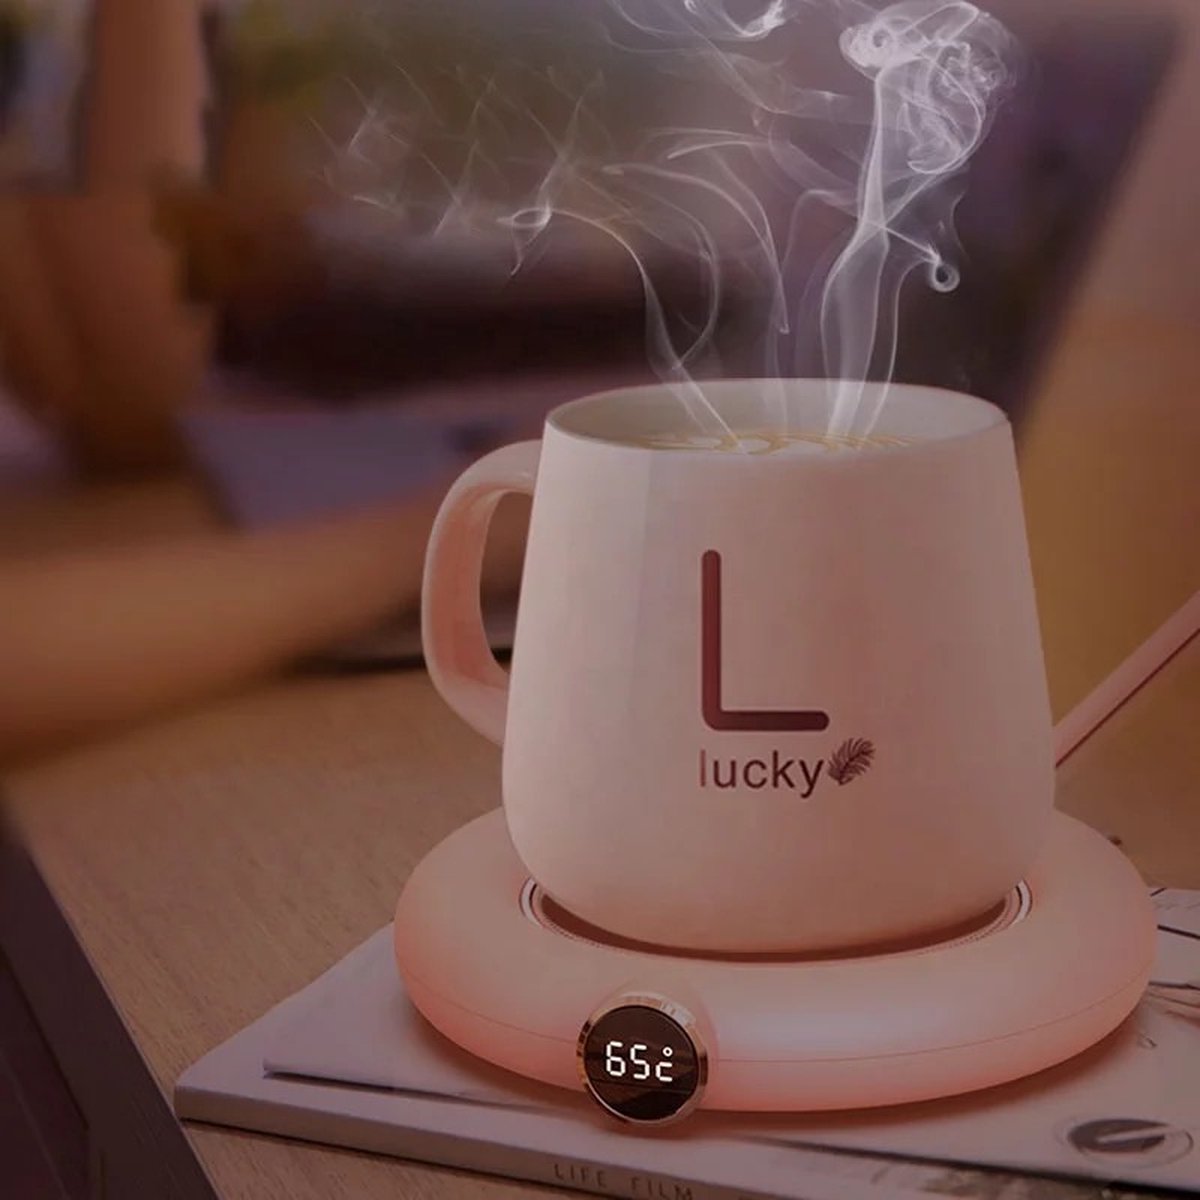 Tasse chauffante électrique avec coussin USB, pour le café, le